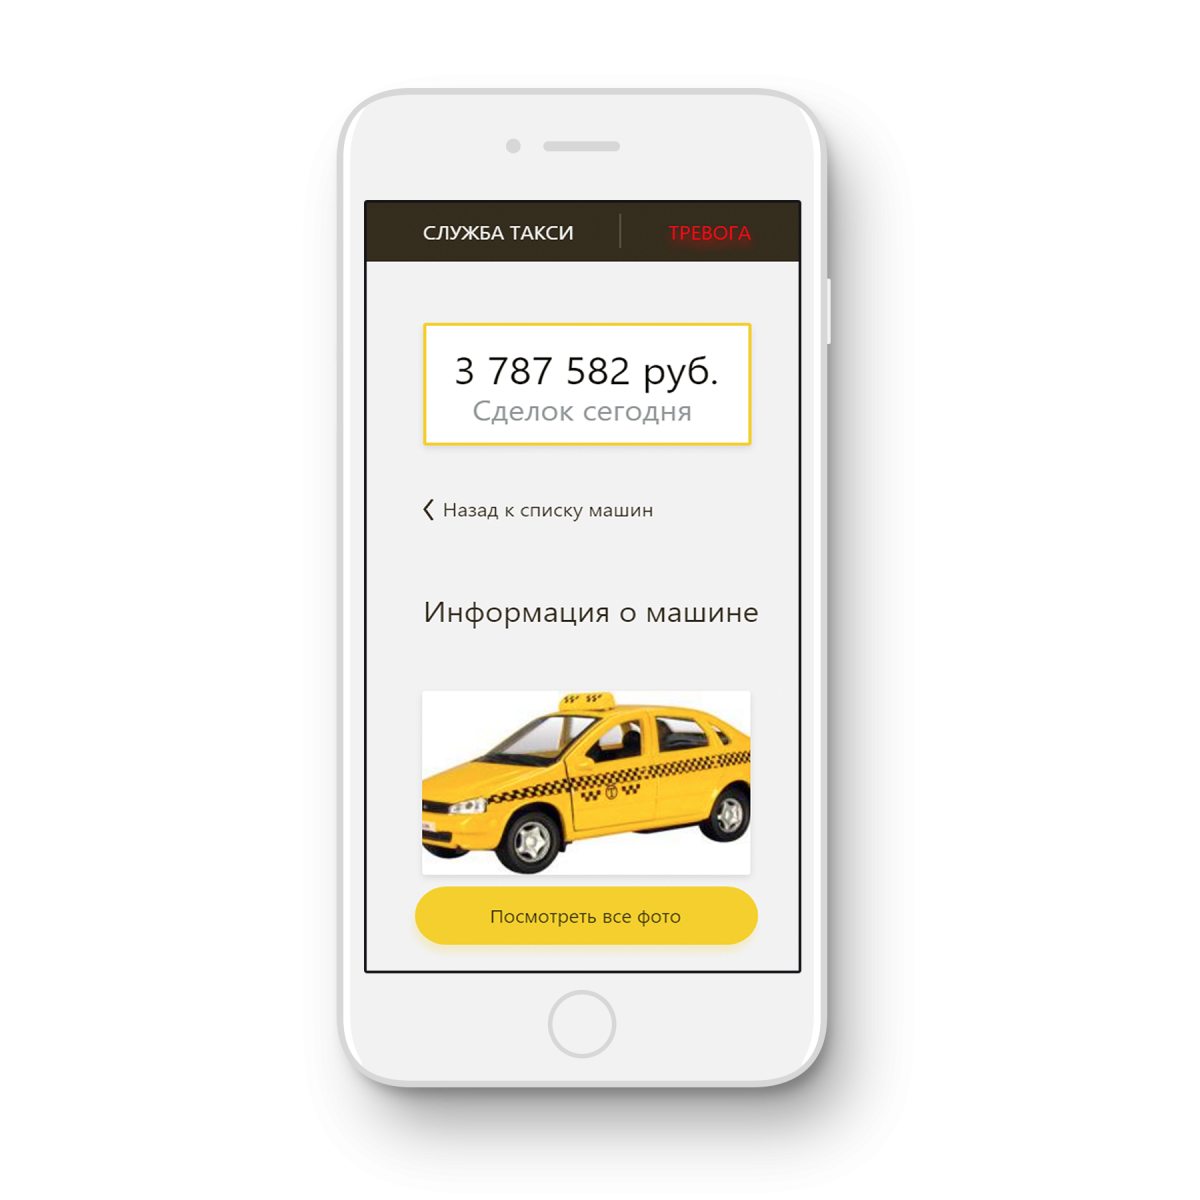 Вызов такси с мобильного телефона. Приложение такси. Реклама приложения такси. Мобильное приложение такси.